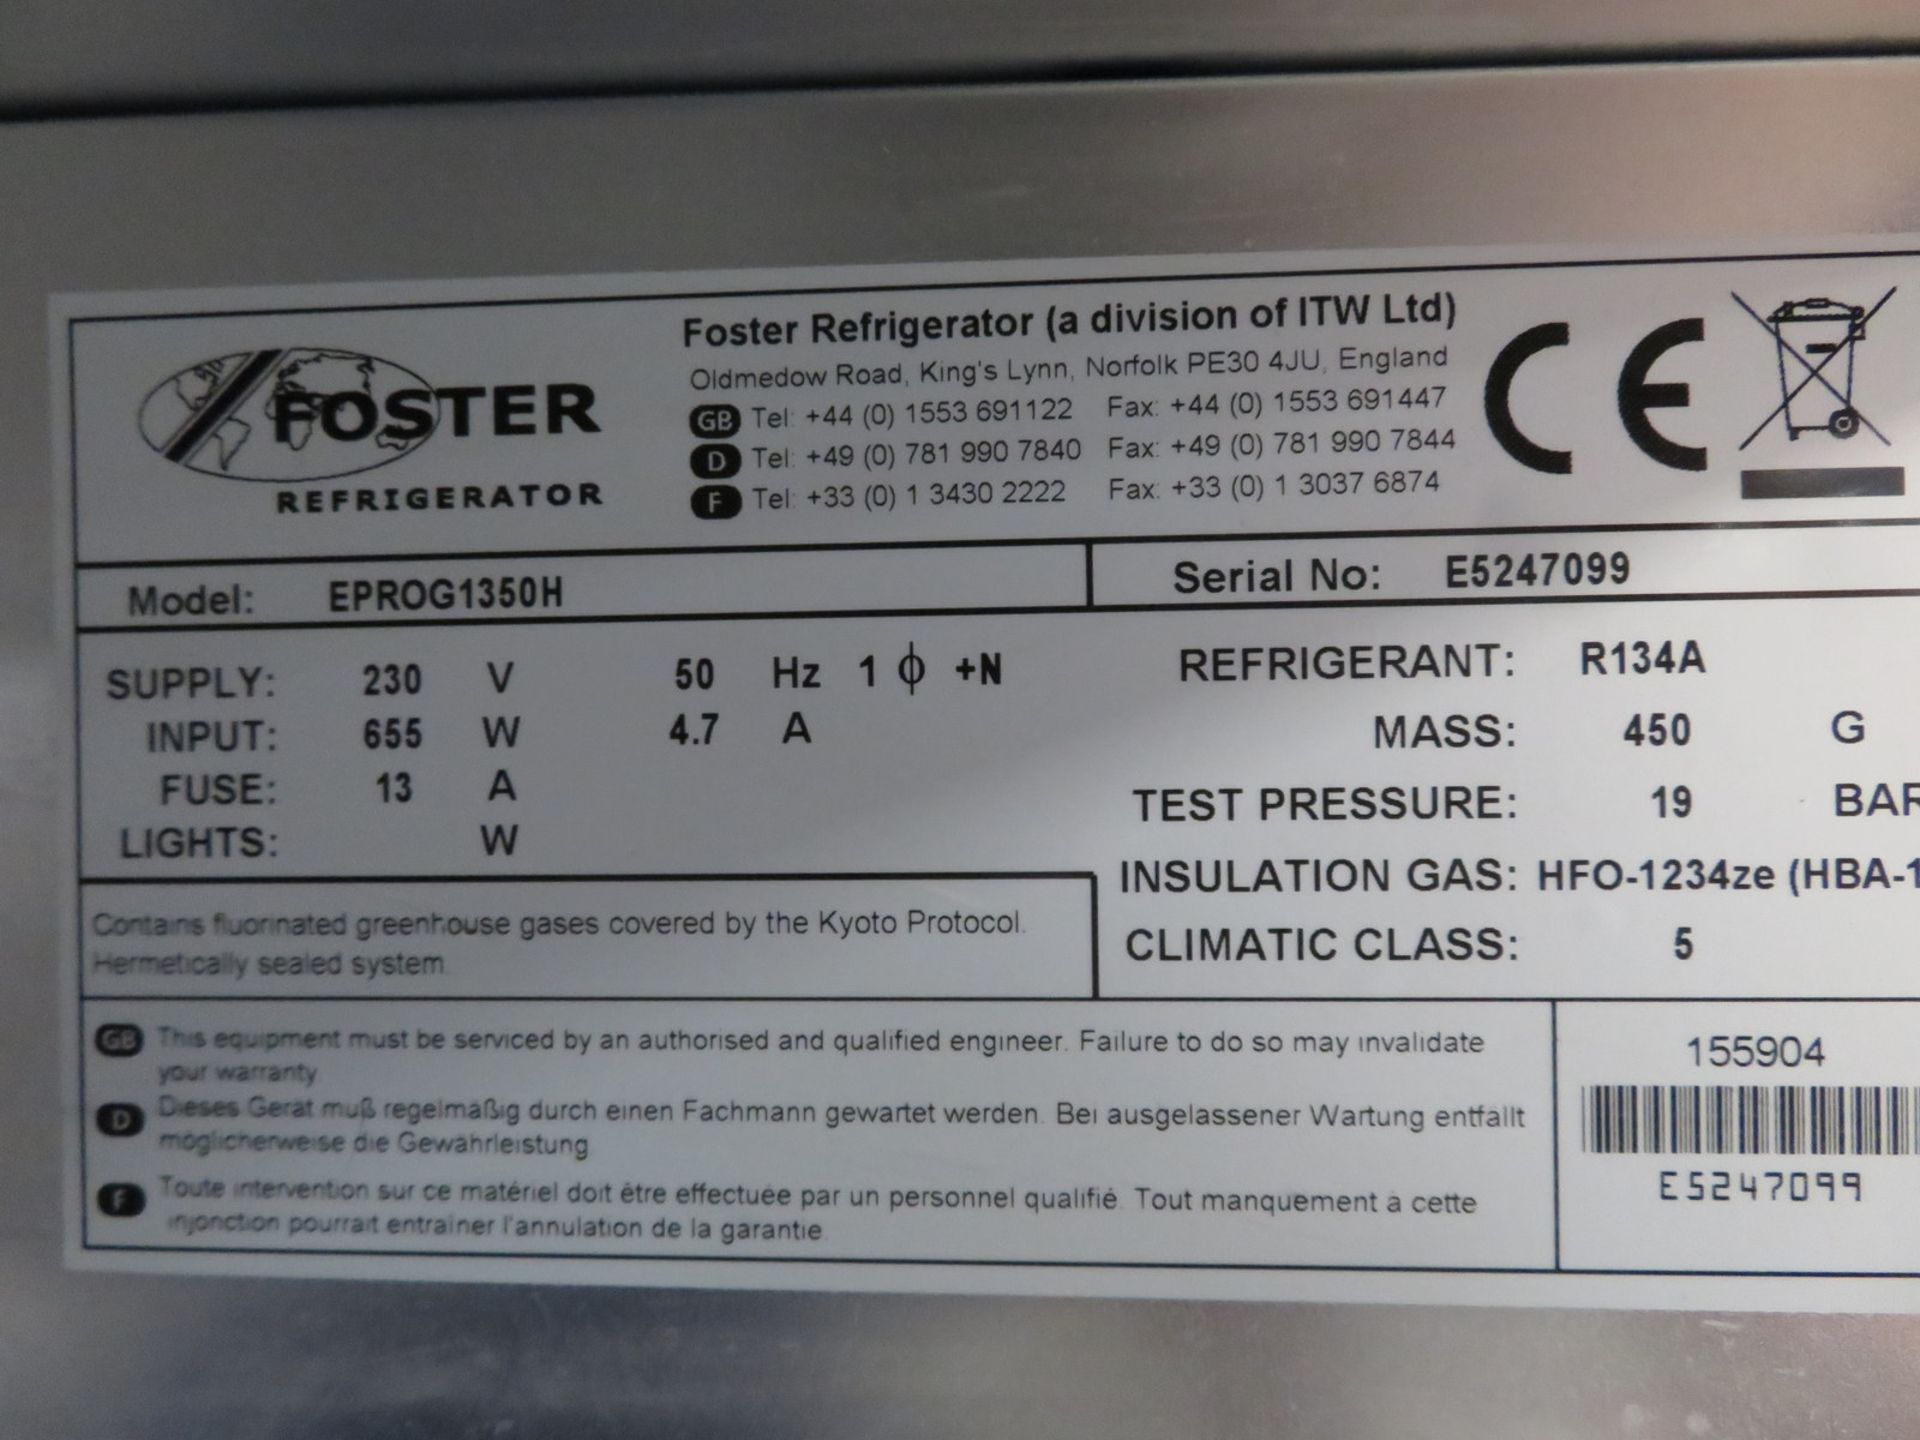 Foster EPROG1350H Commercial Double Door Fridge. - Image 6 of 6